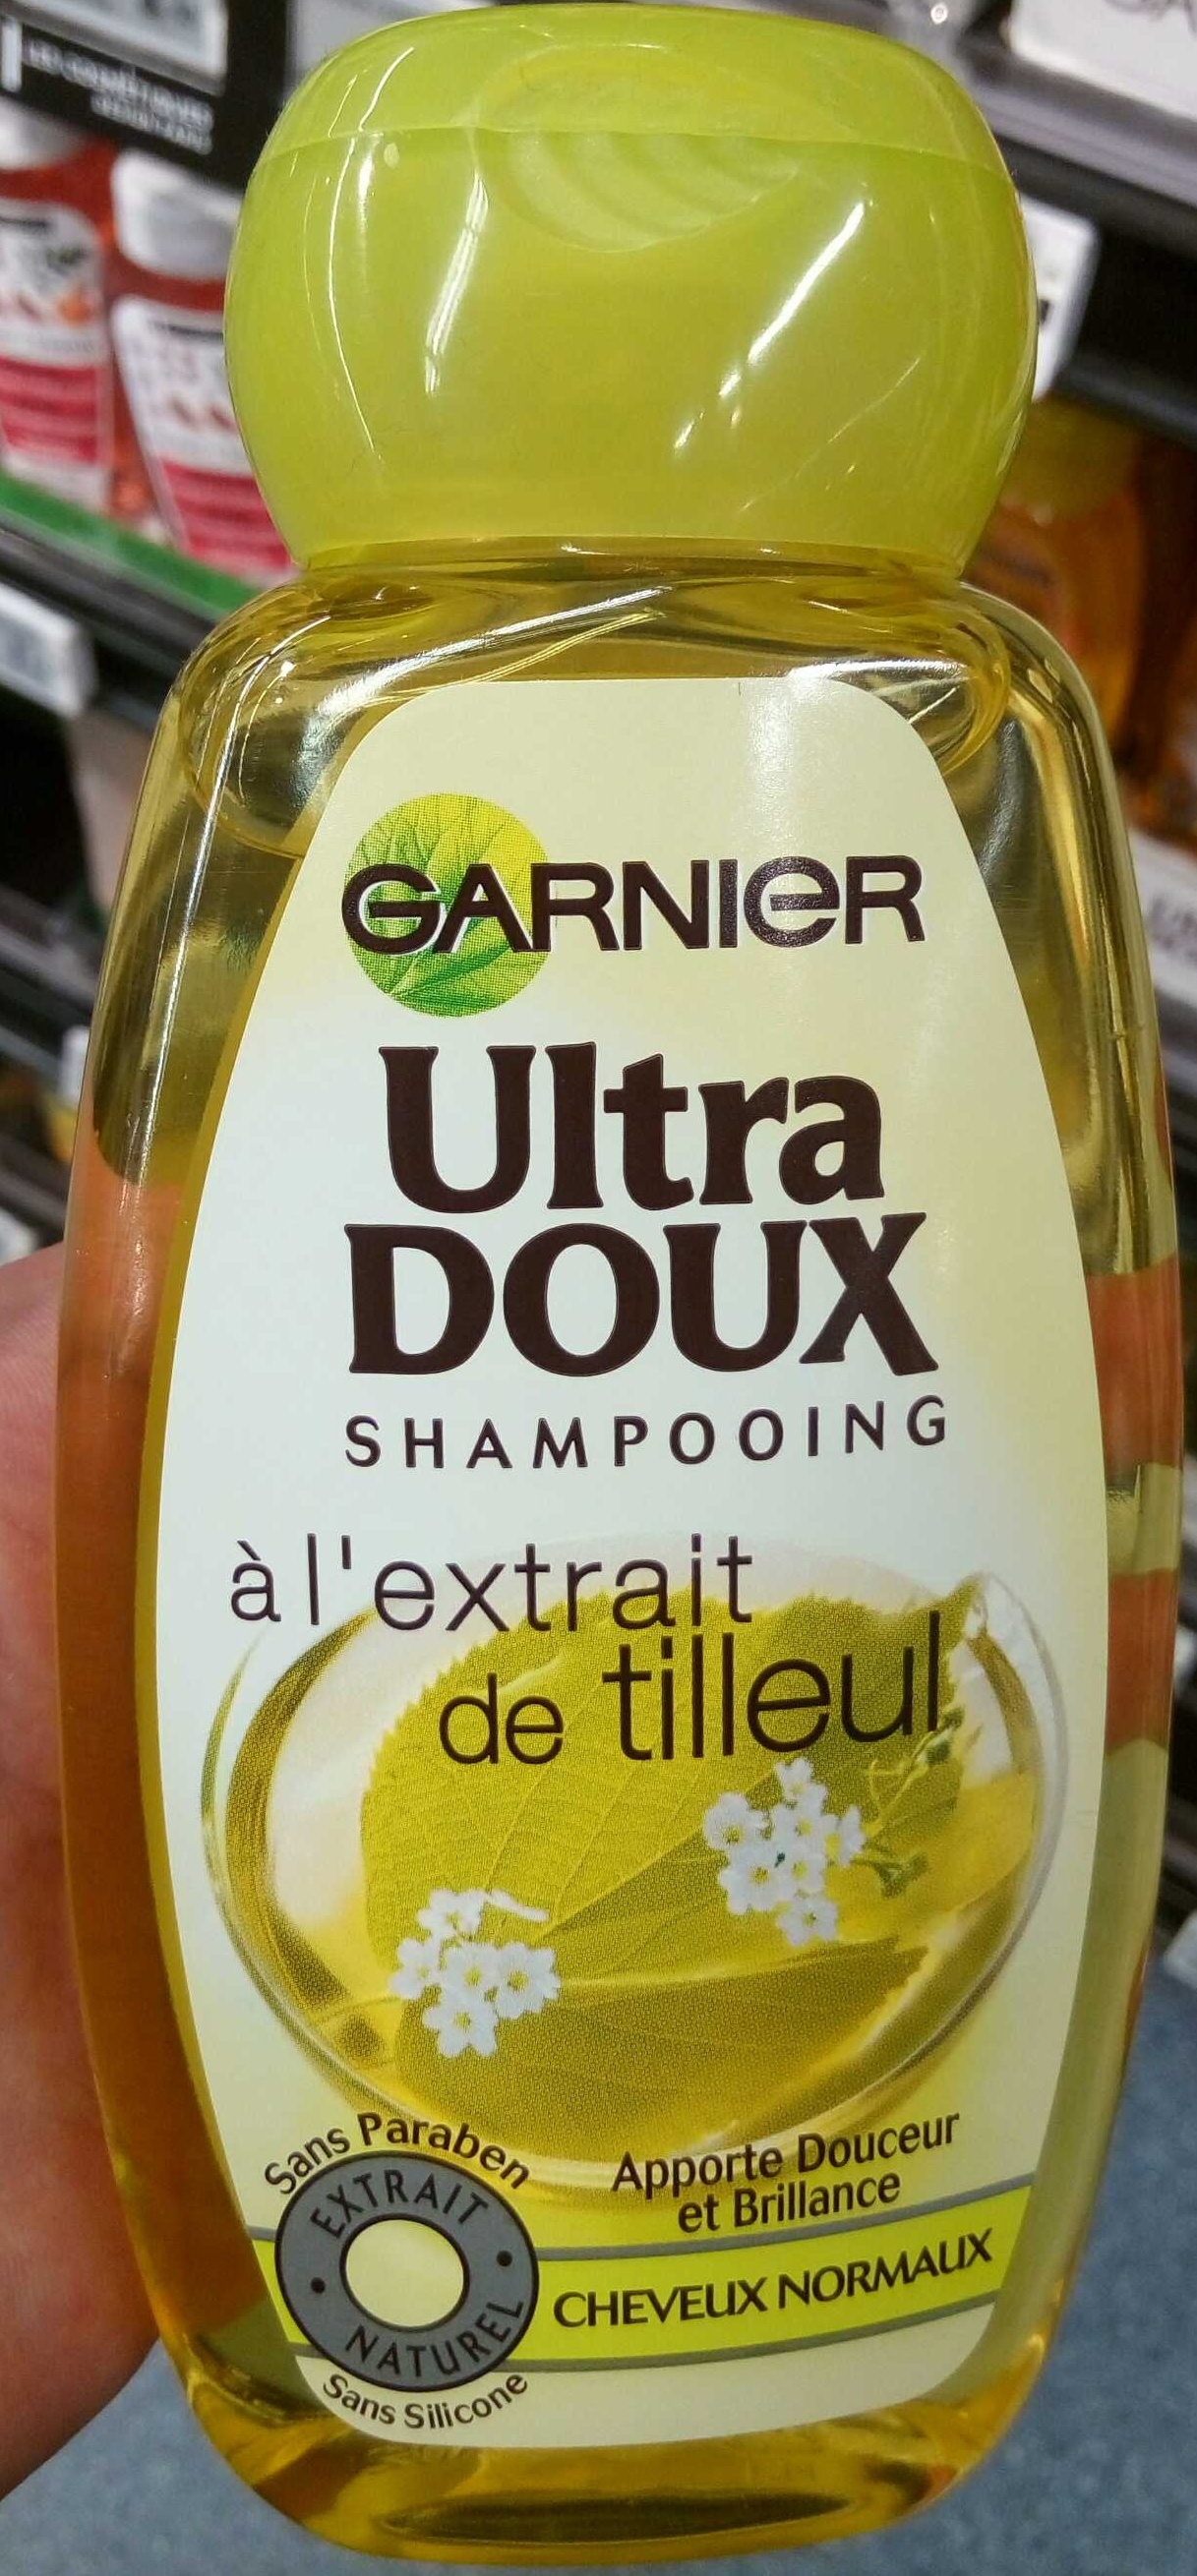 Ultra Doux Shampooing à l'extrait de tilleul - Product - fr